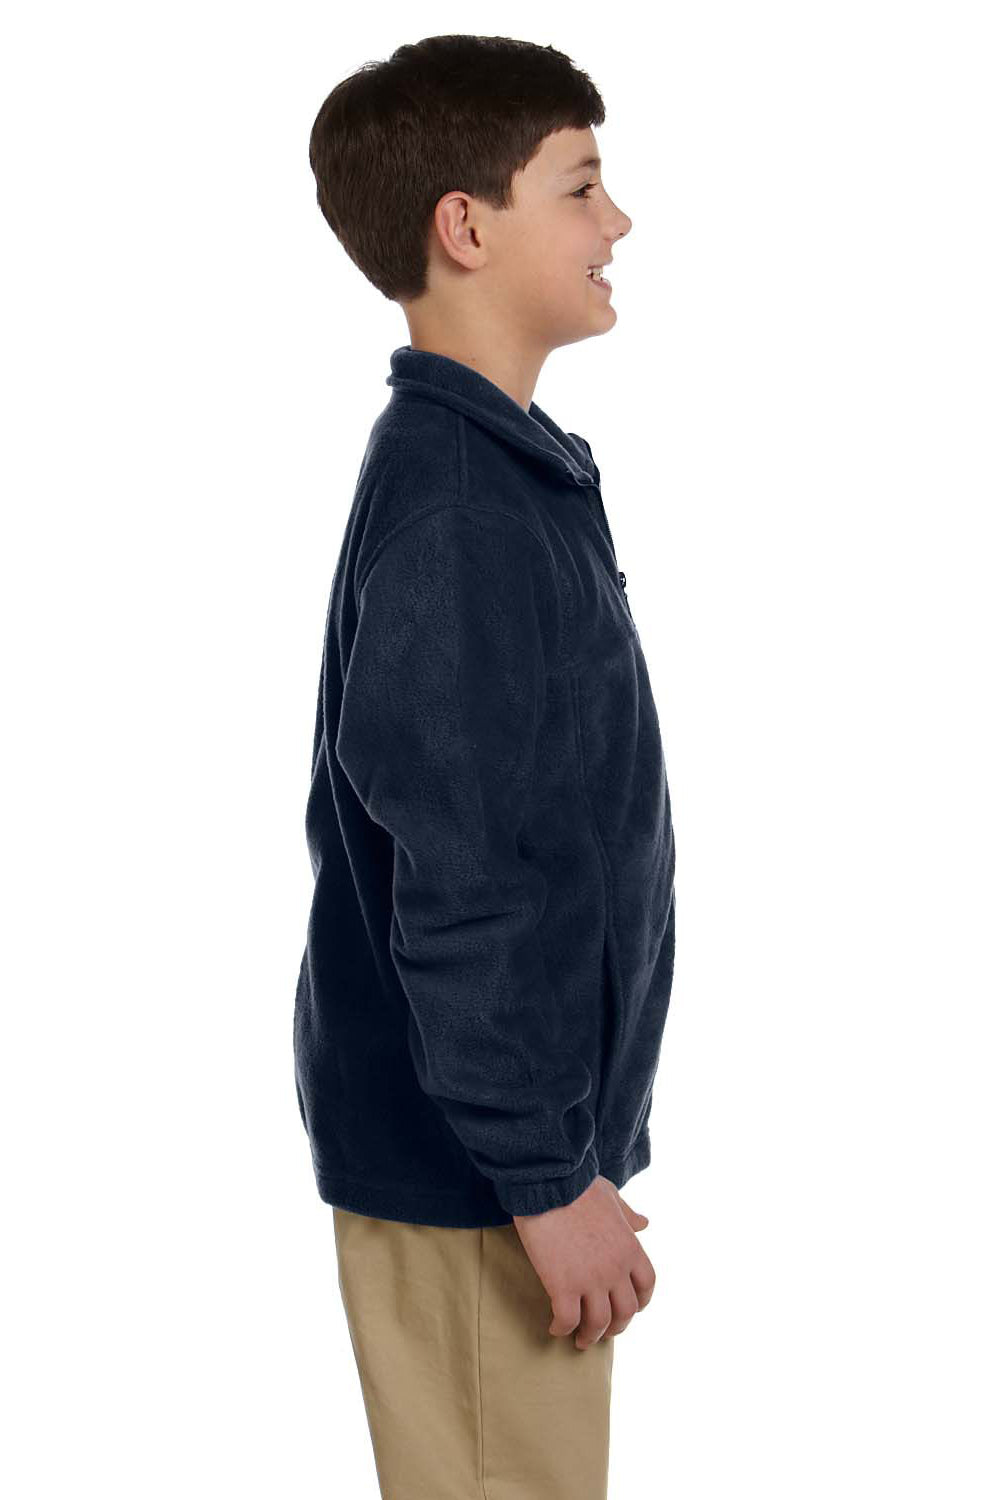 Harriton M990Y Youth Full Zip Fleece Jacket Navy Blue Side